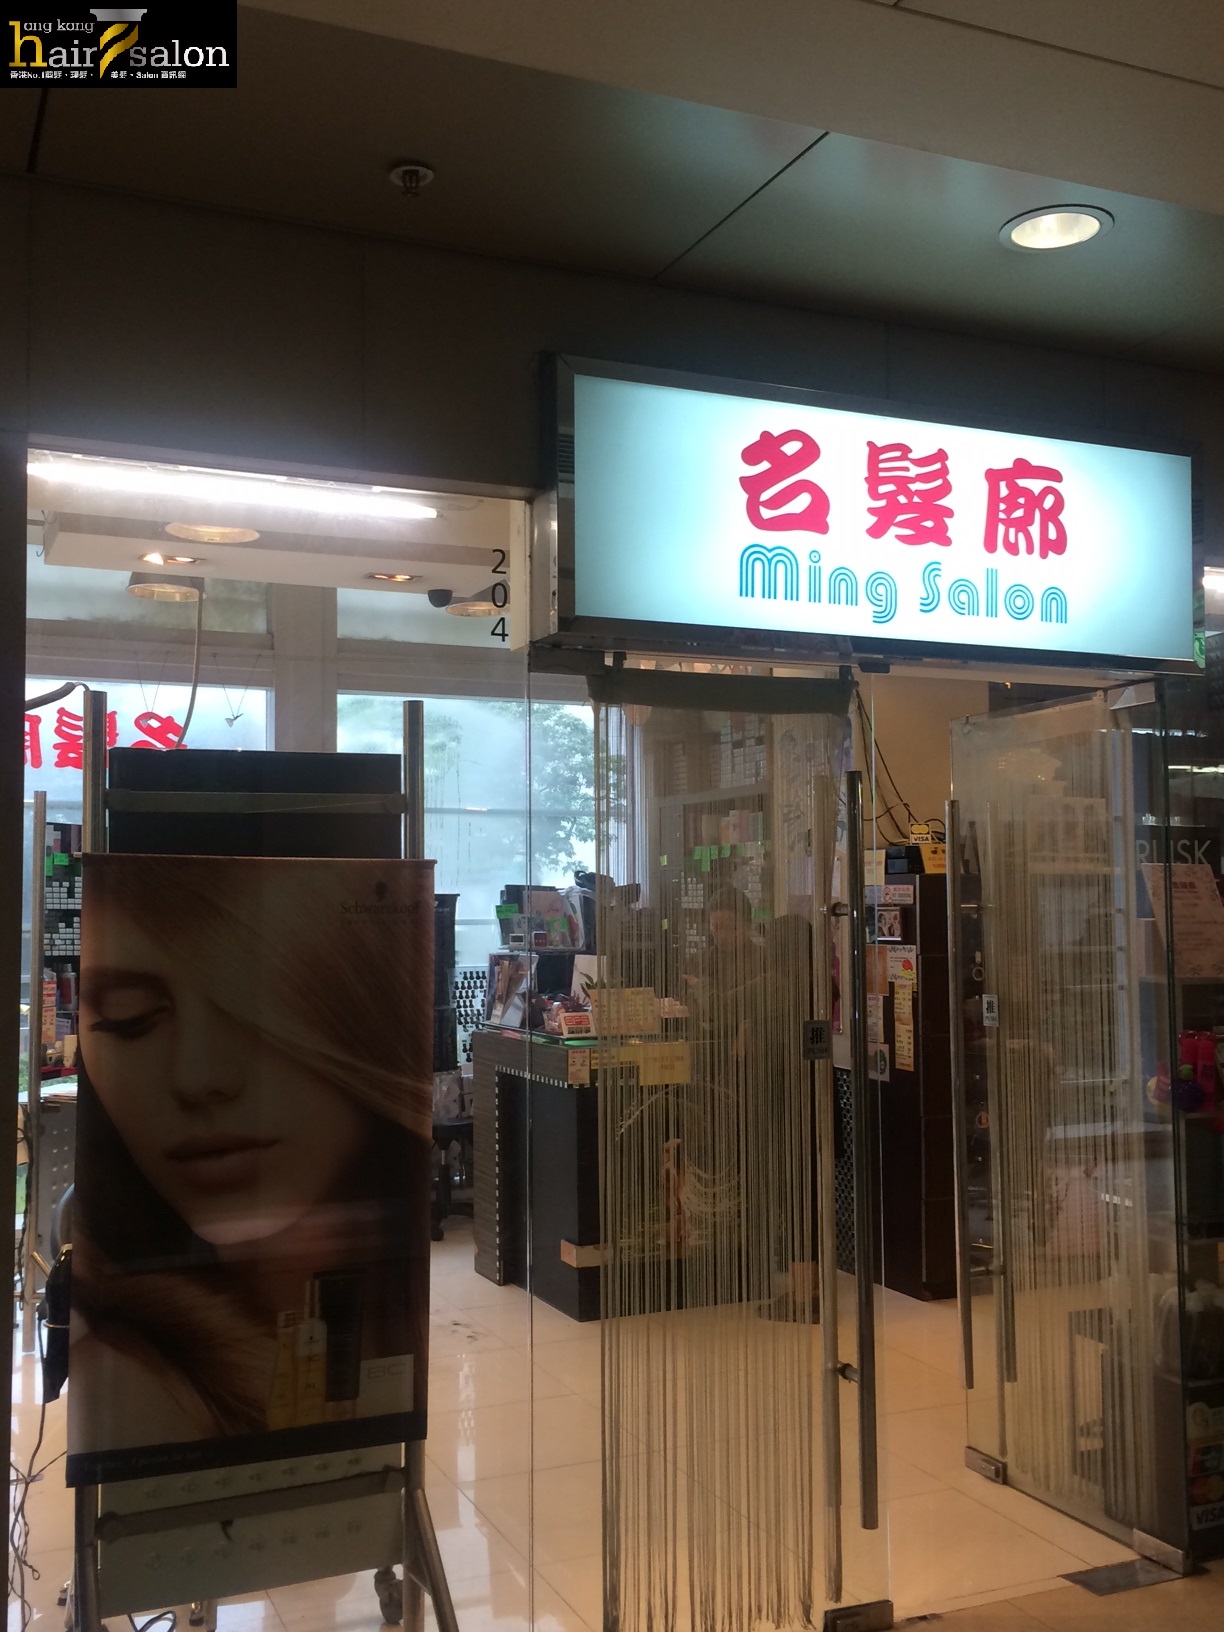 洗剪吹/洗吹造型: 名髮廊 Ming Salon (葵涌店)